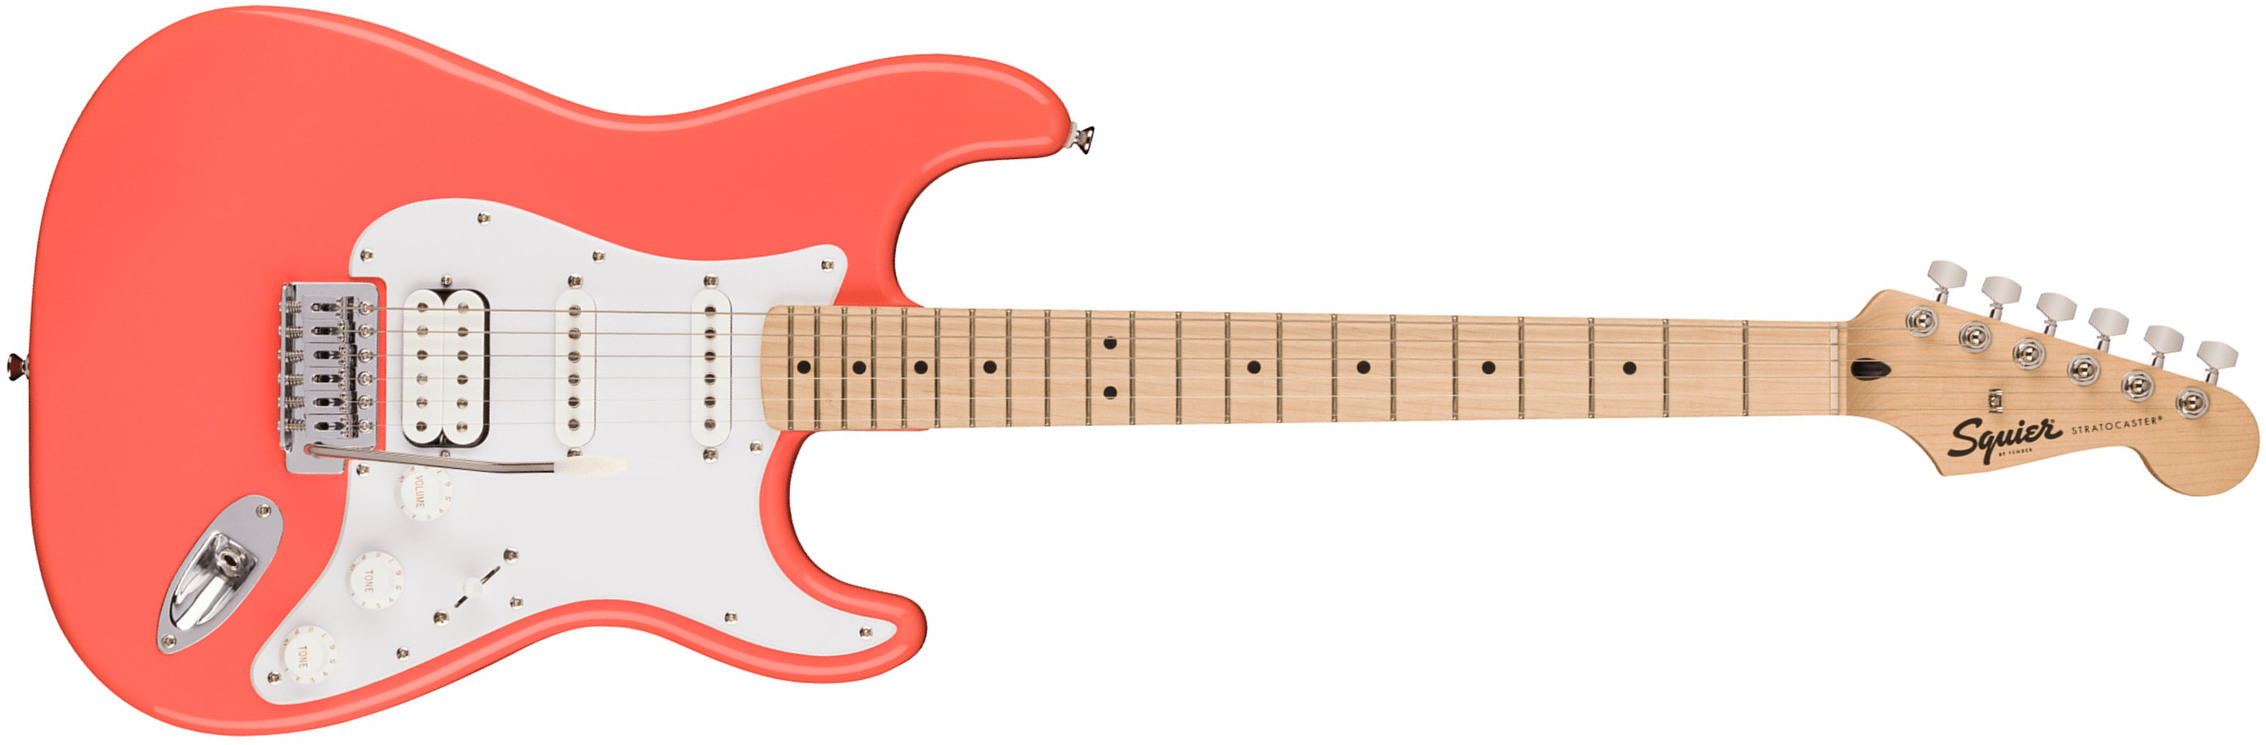 Squier Strat Sonic Hss Trem Mn - Tahitian Coral - Elektrische gitaar in Str-vorm - Main picture